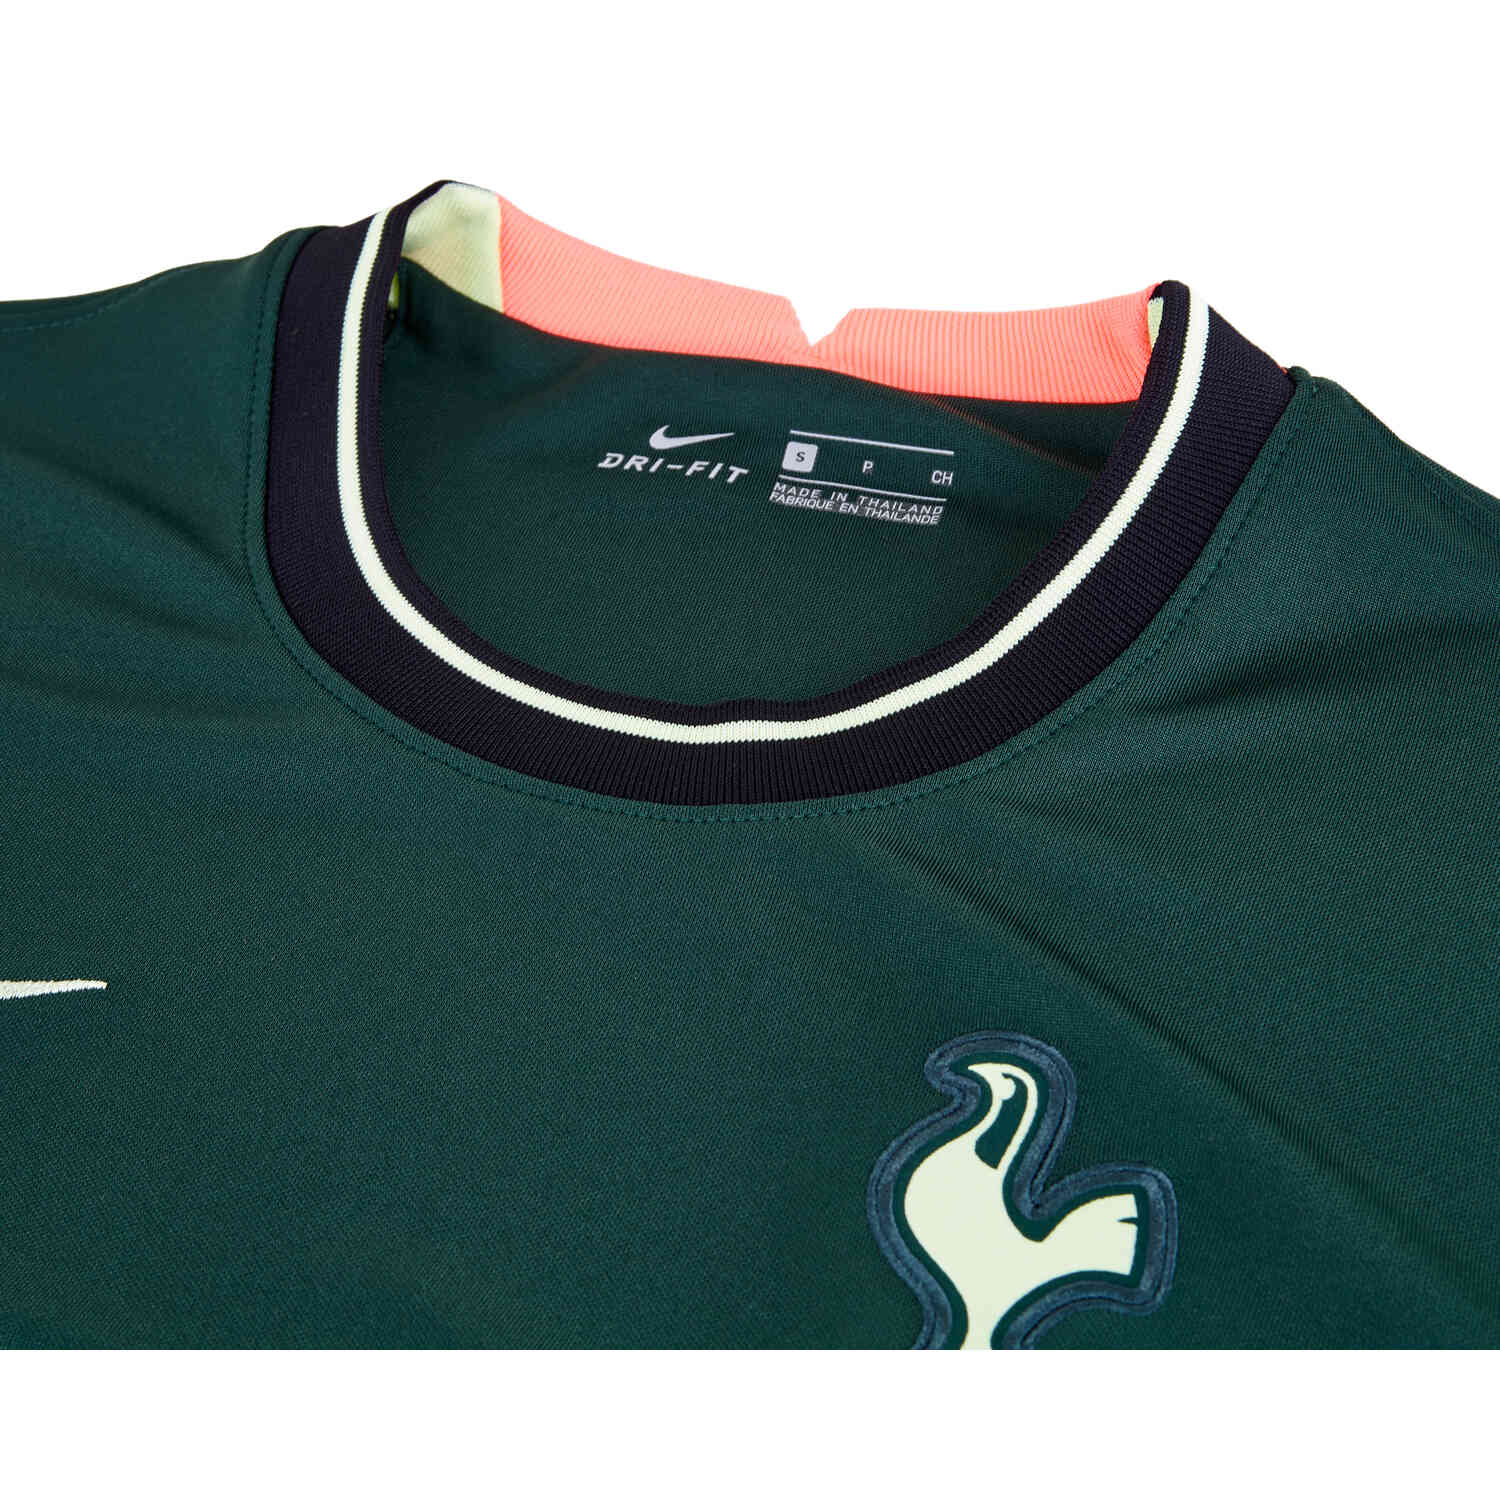 2020/21 Nike Tottenham Away Jersey - SoccerPro